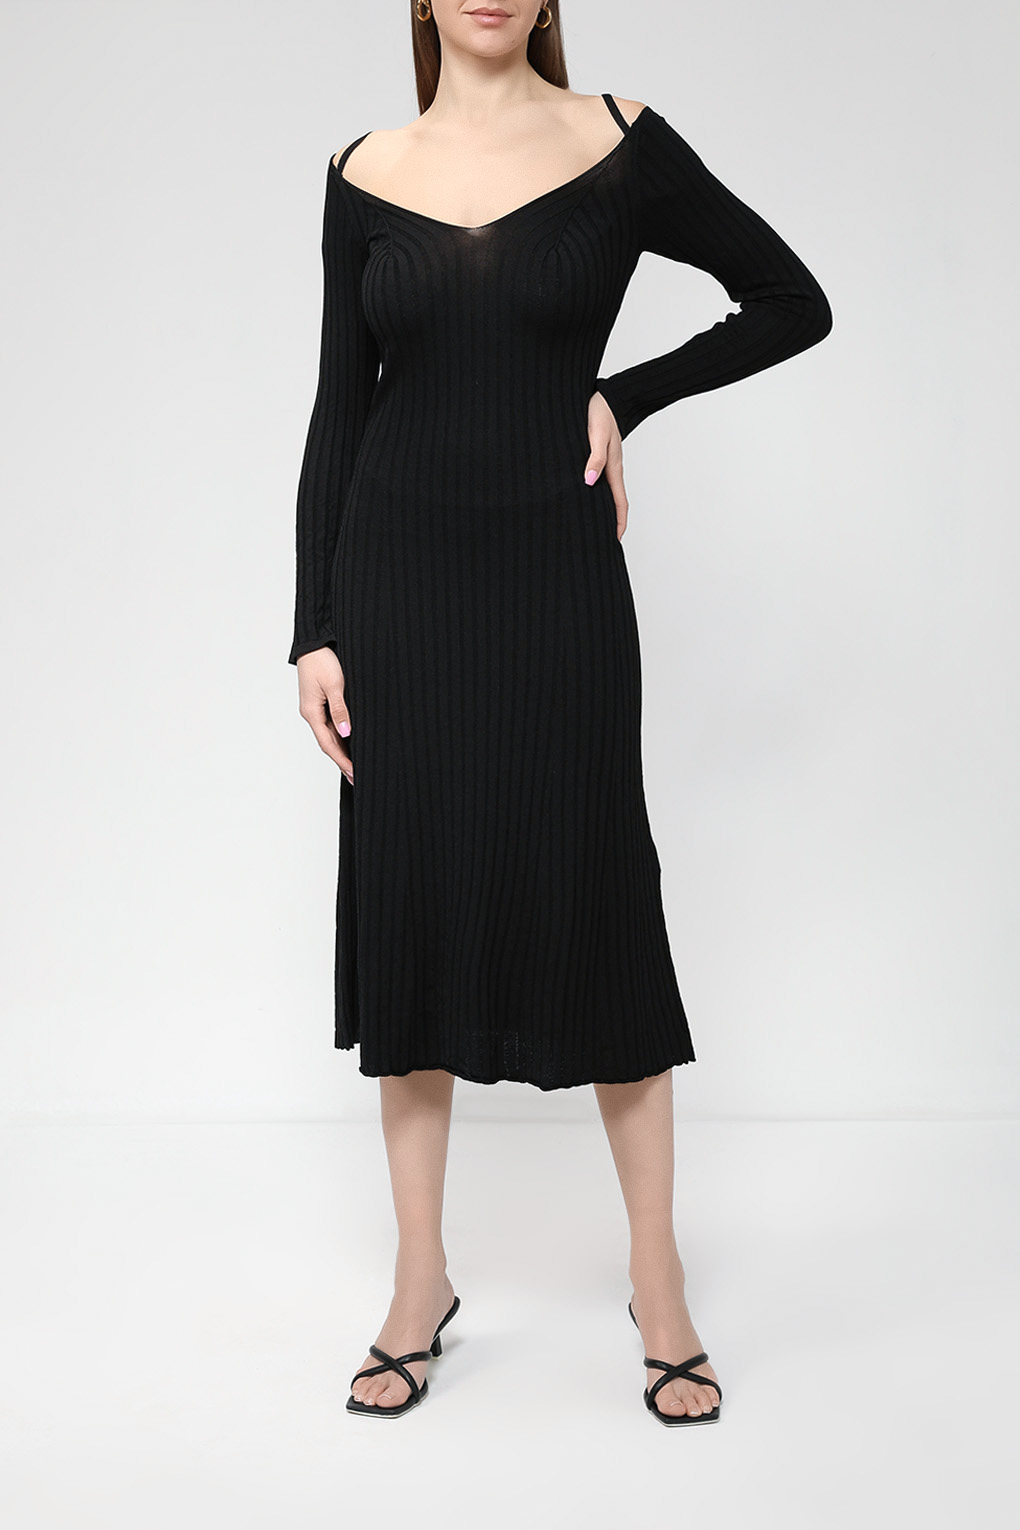 Платье женское Perspective 23100121 черное L